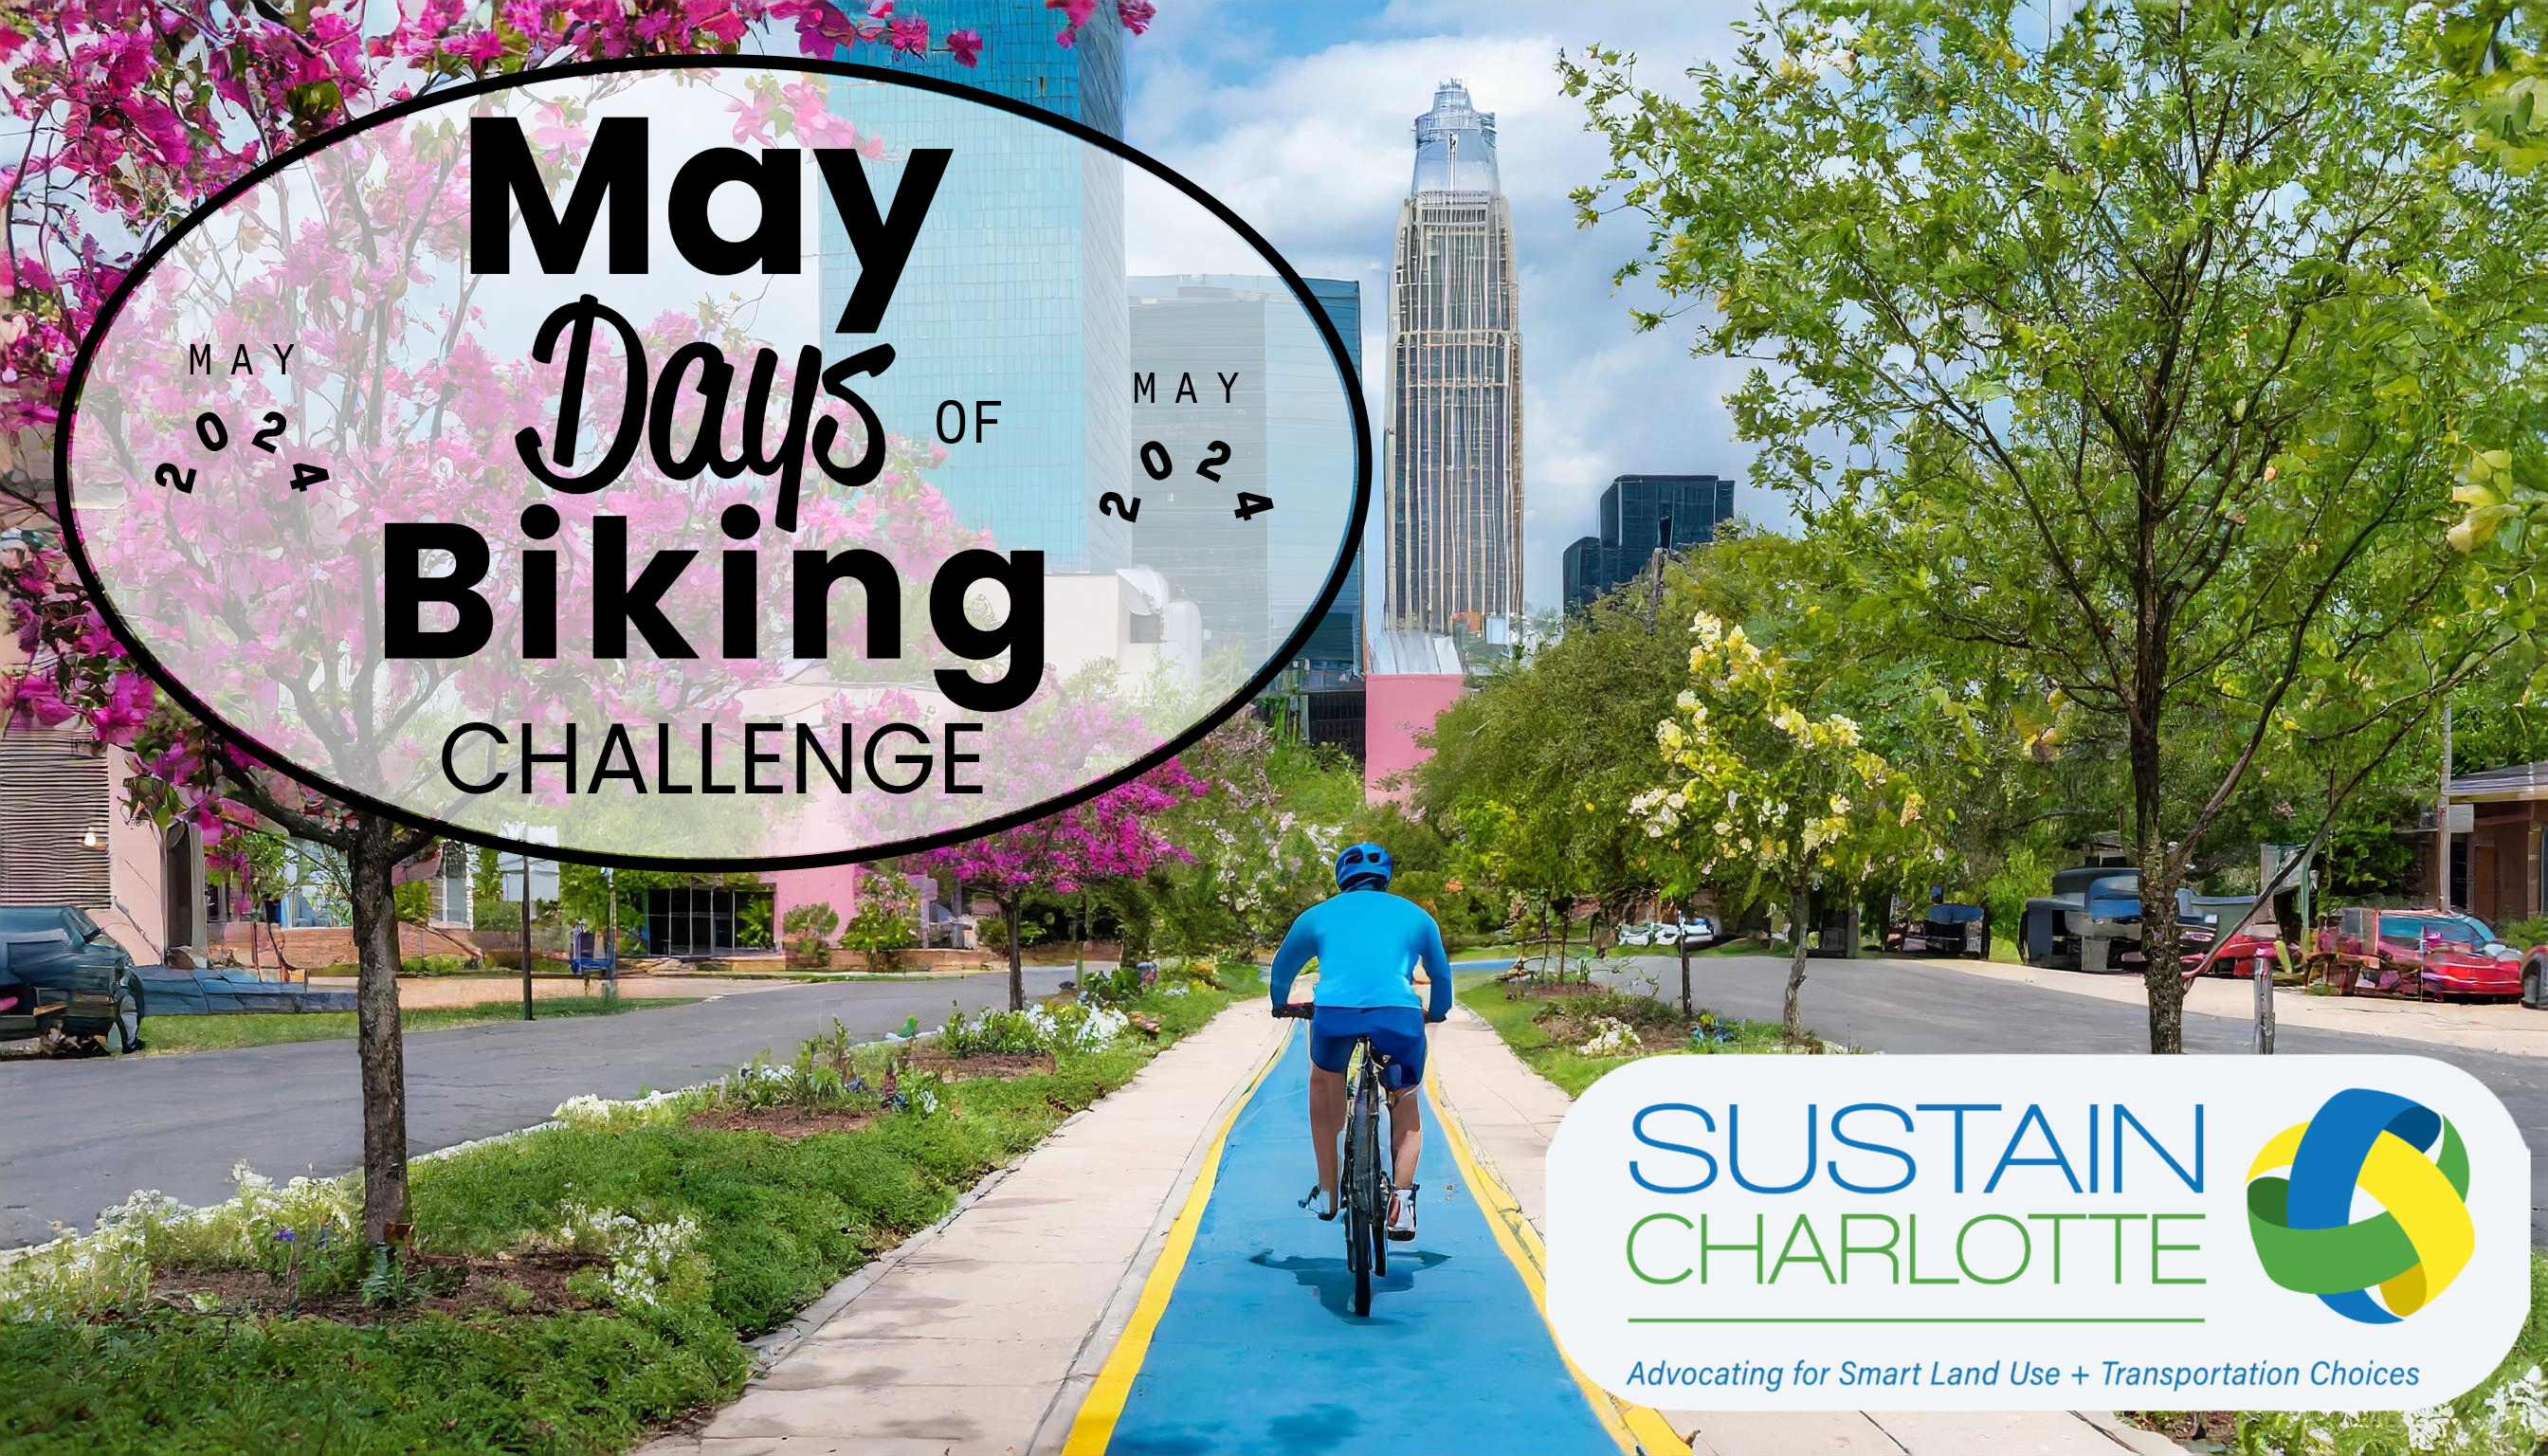 May Days of Biking challenge